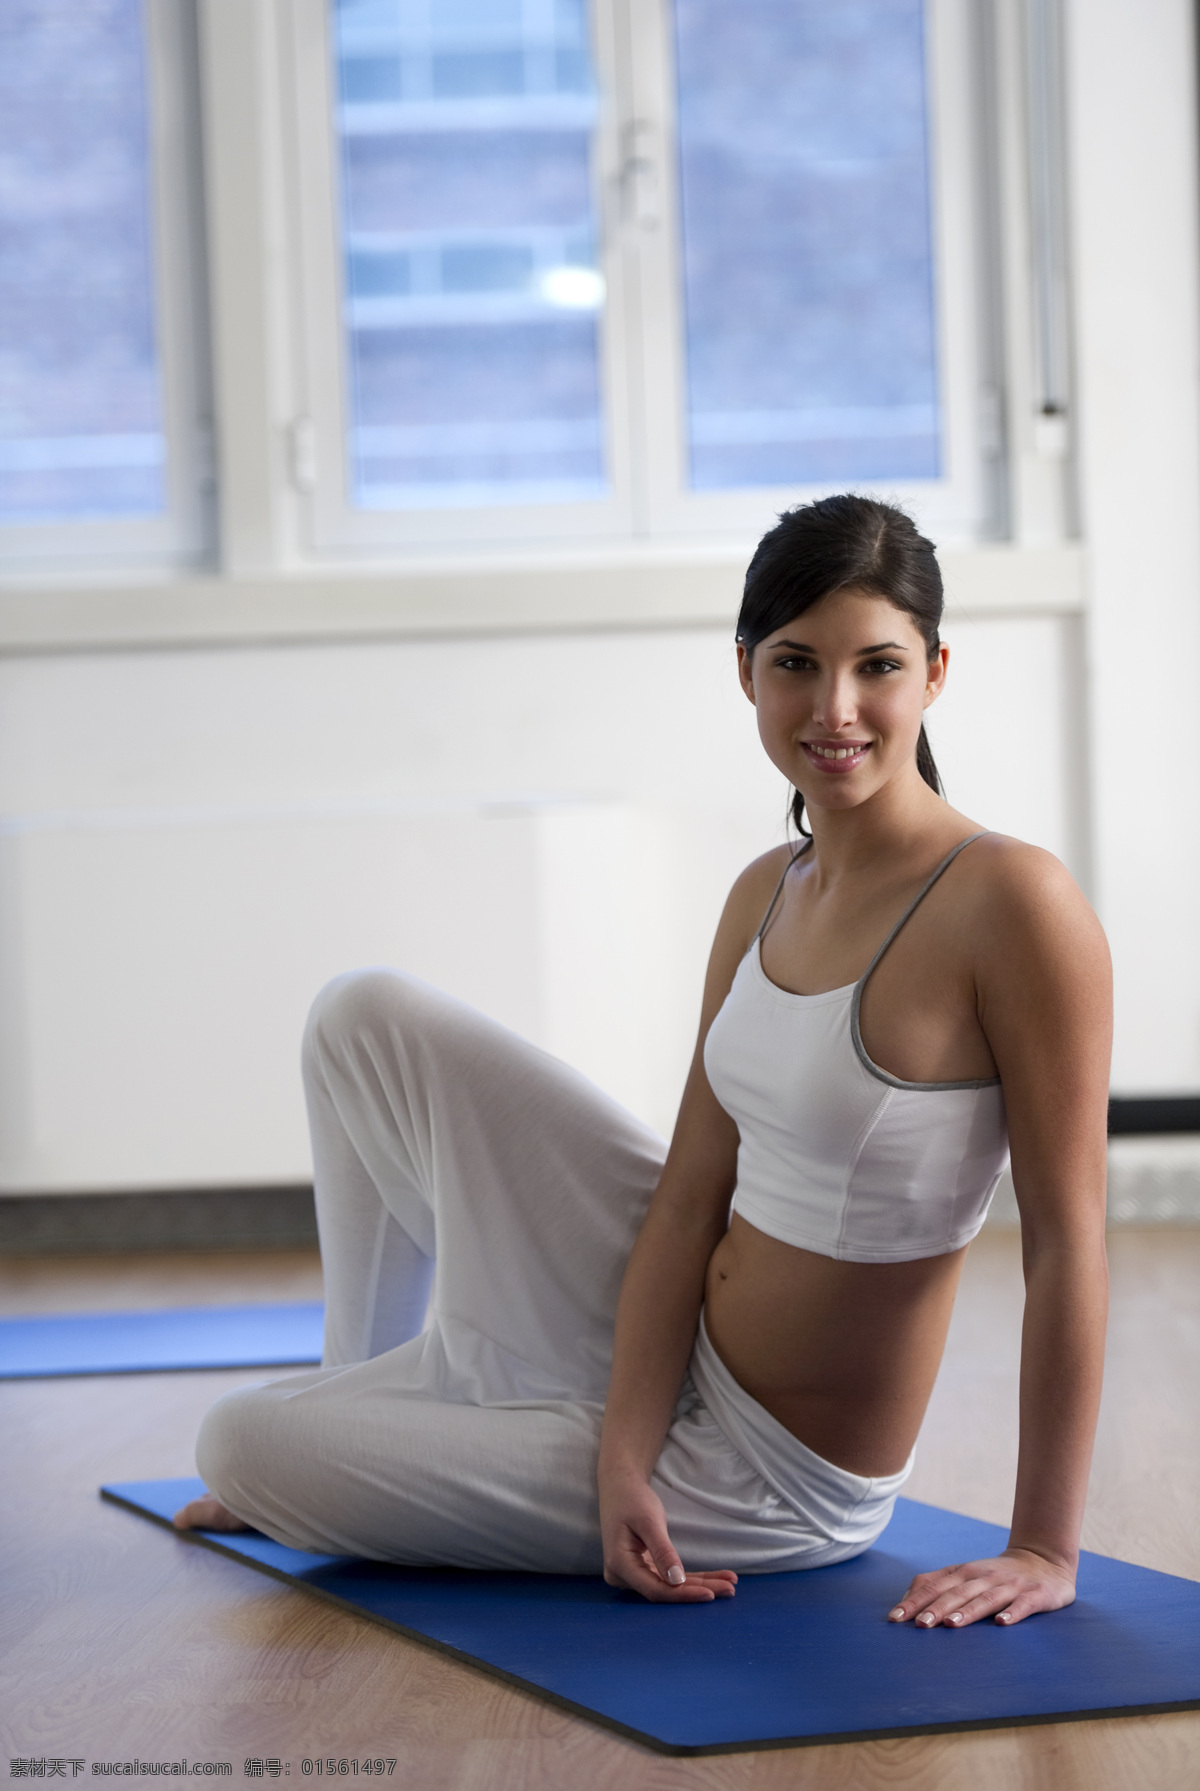 美丽 年轻 女子 健身房 瑜伽 锻炼 设计素材 高清大图 美女图片 人物图片